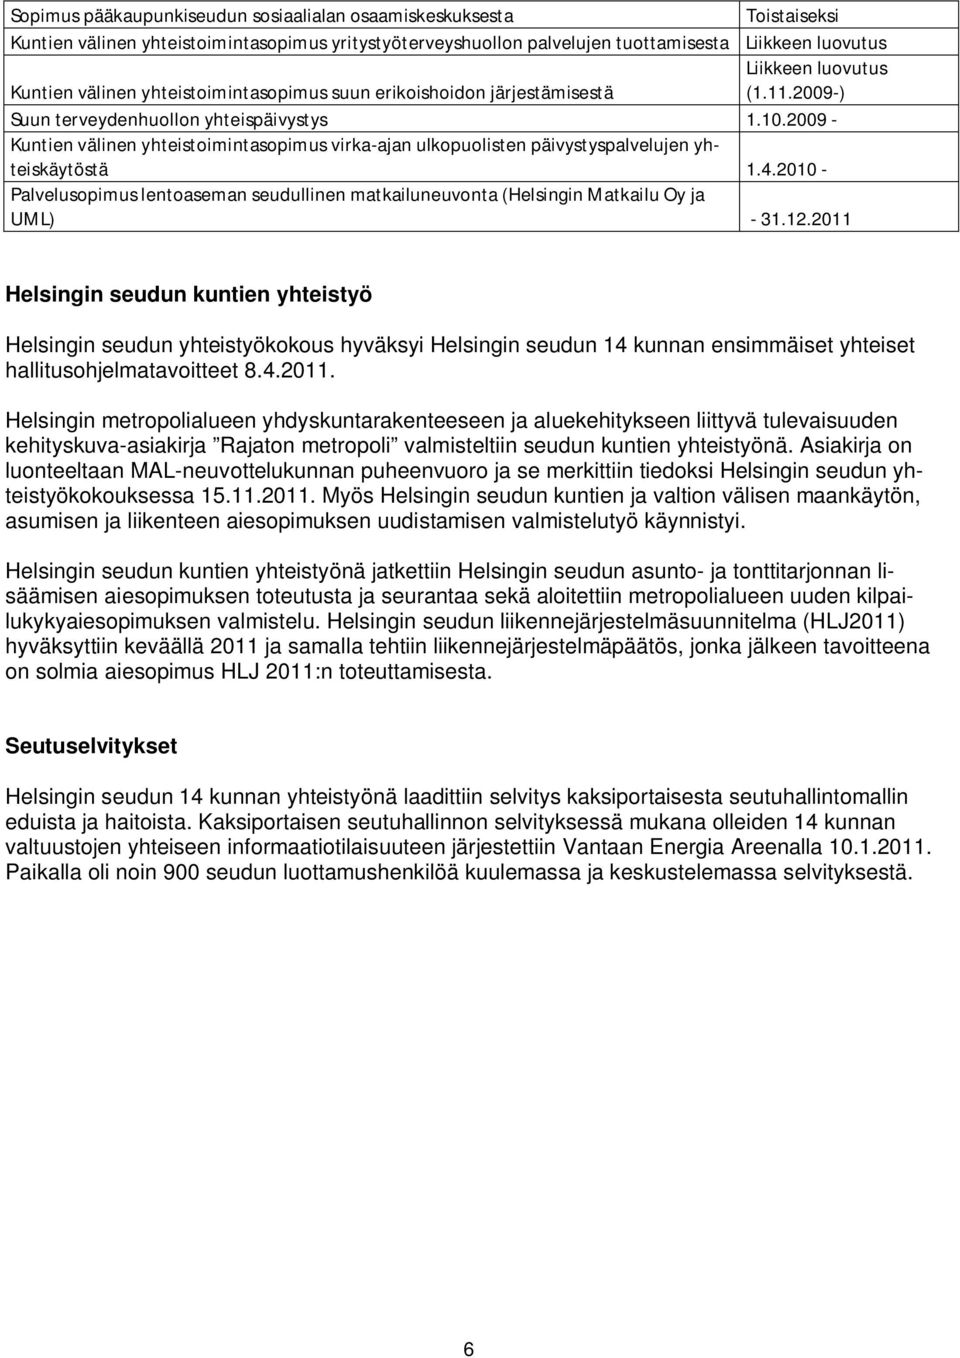 2009 - Kuntien välinen yhteistoimintasopimus virka-ajan ulkopuolisten päivystyspalvelujen yhteiskäytöstä 1.4.